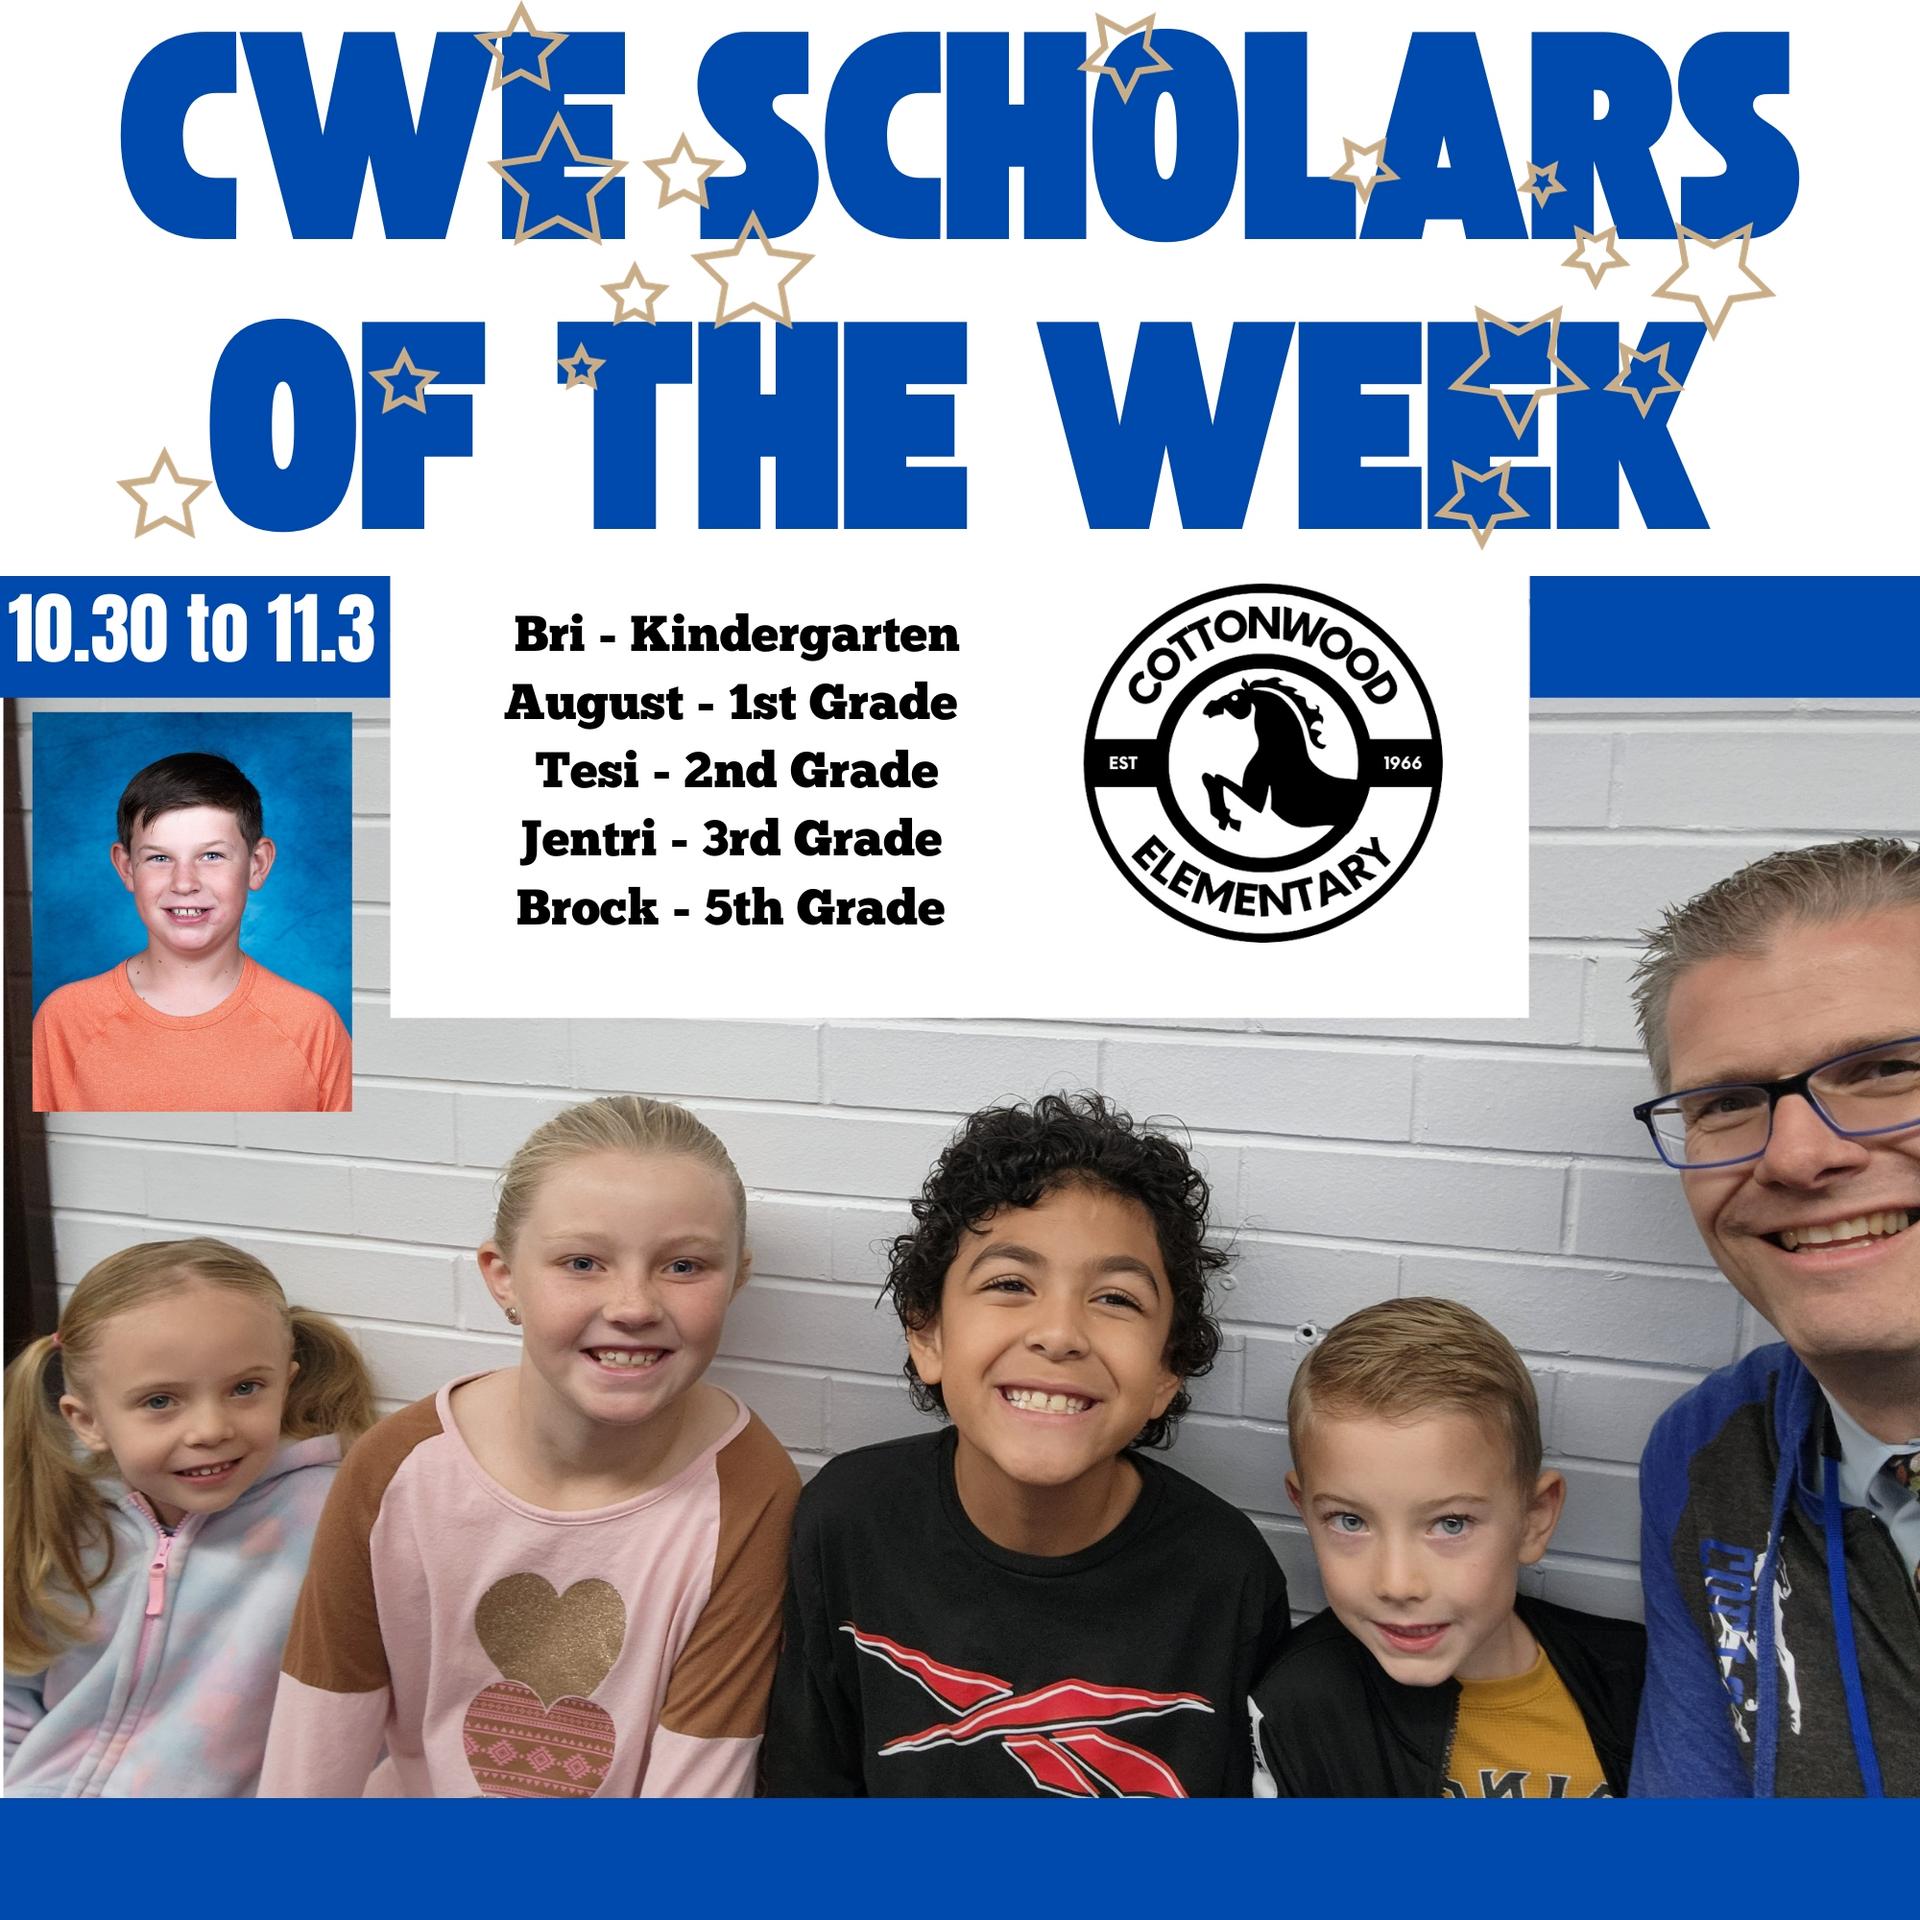 CWE-Scholars-of-the-Week-10.30-to-11.3.jpg